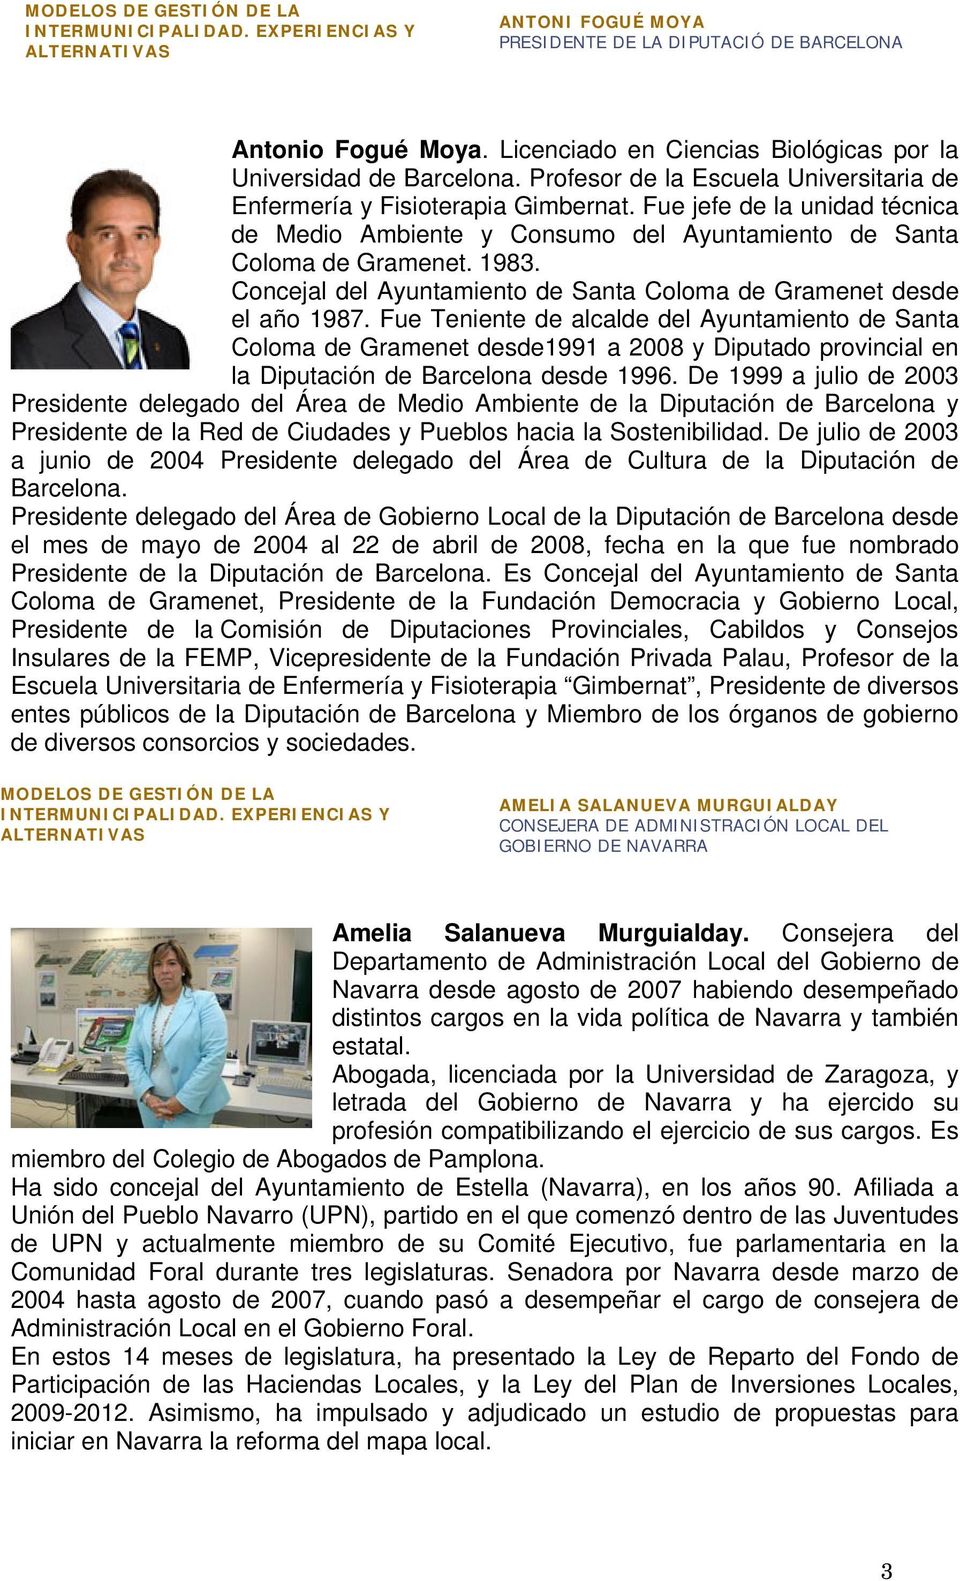 Fue jefe de la unidad técnica de Medio Ambiente y Consumo del Ayuntamiento de Santa Coloma de Gramenet. 1983. Concejal del Ayuntamiento de Santa Coloma de Gramenet desde el año 1987.